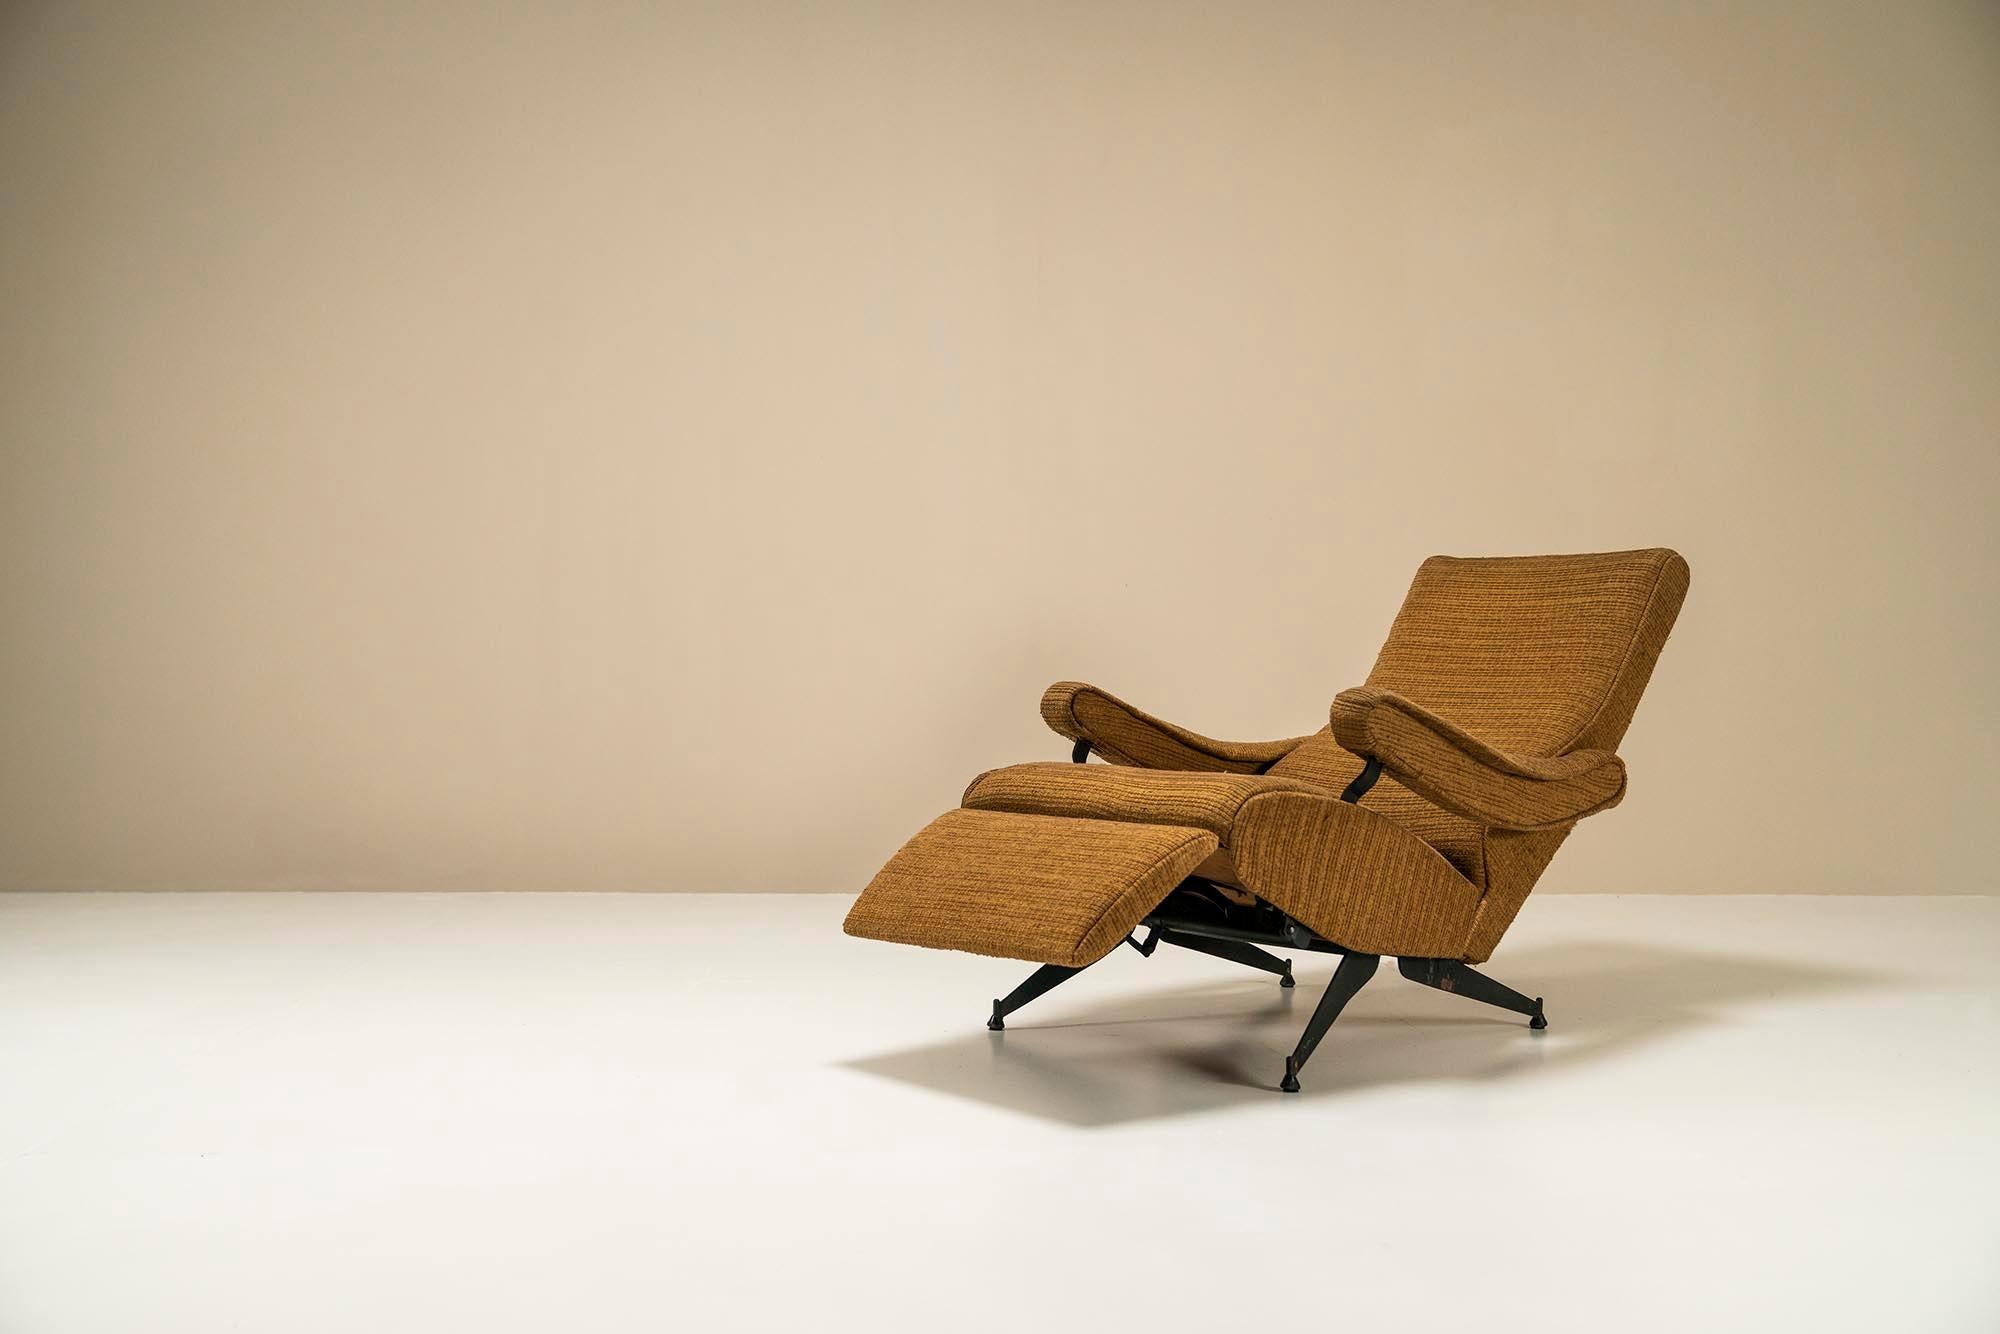 The Nello Pini reclining armchair model 